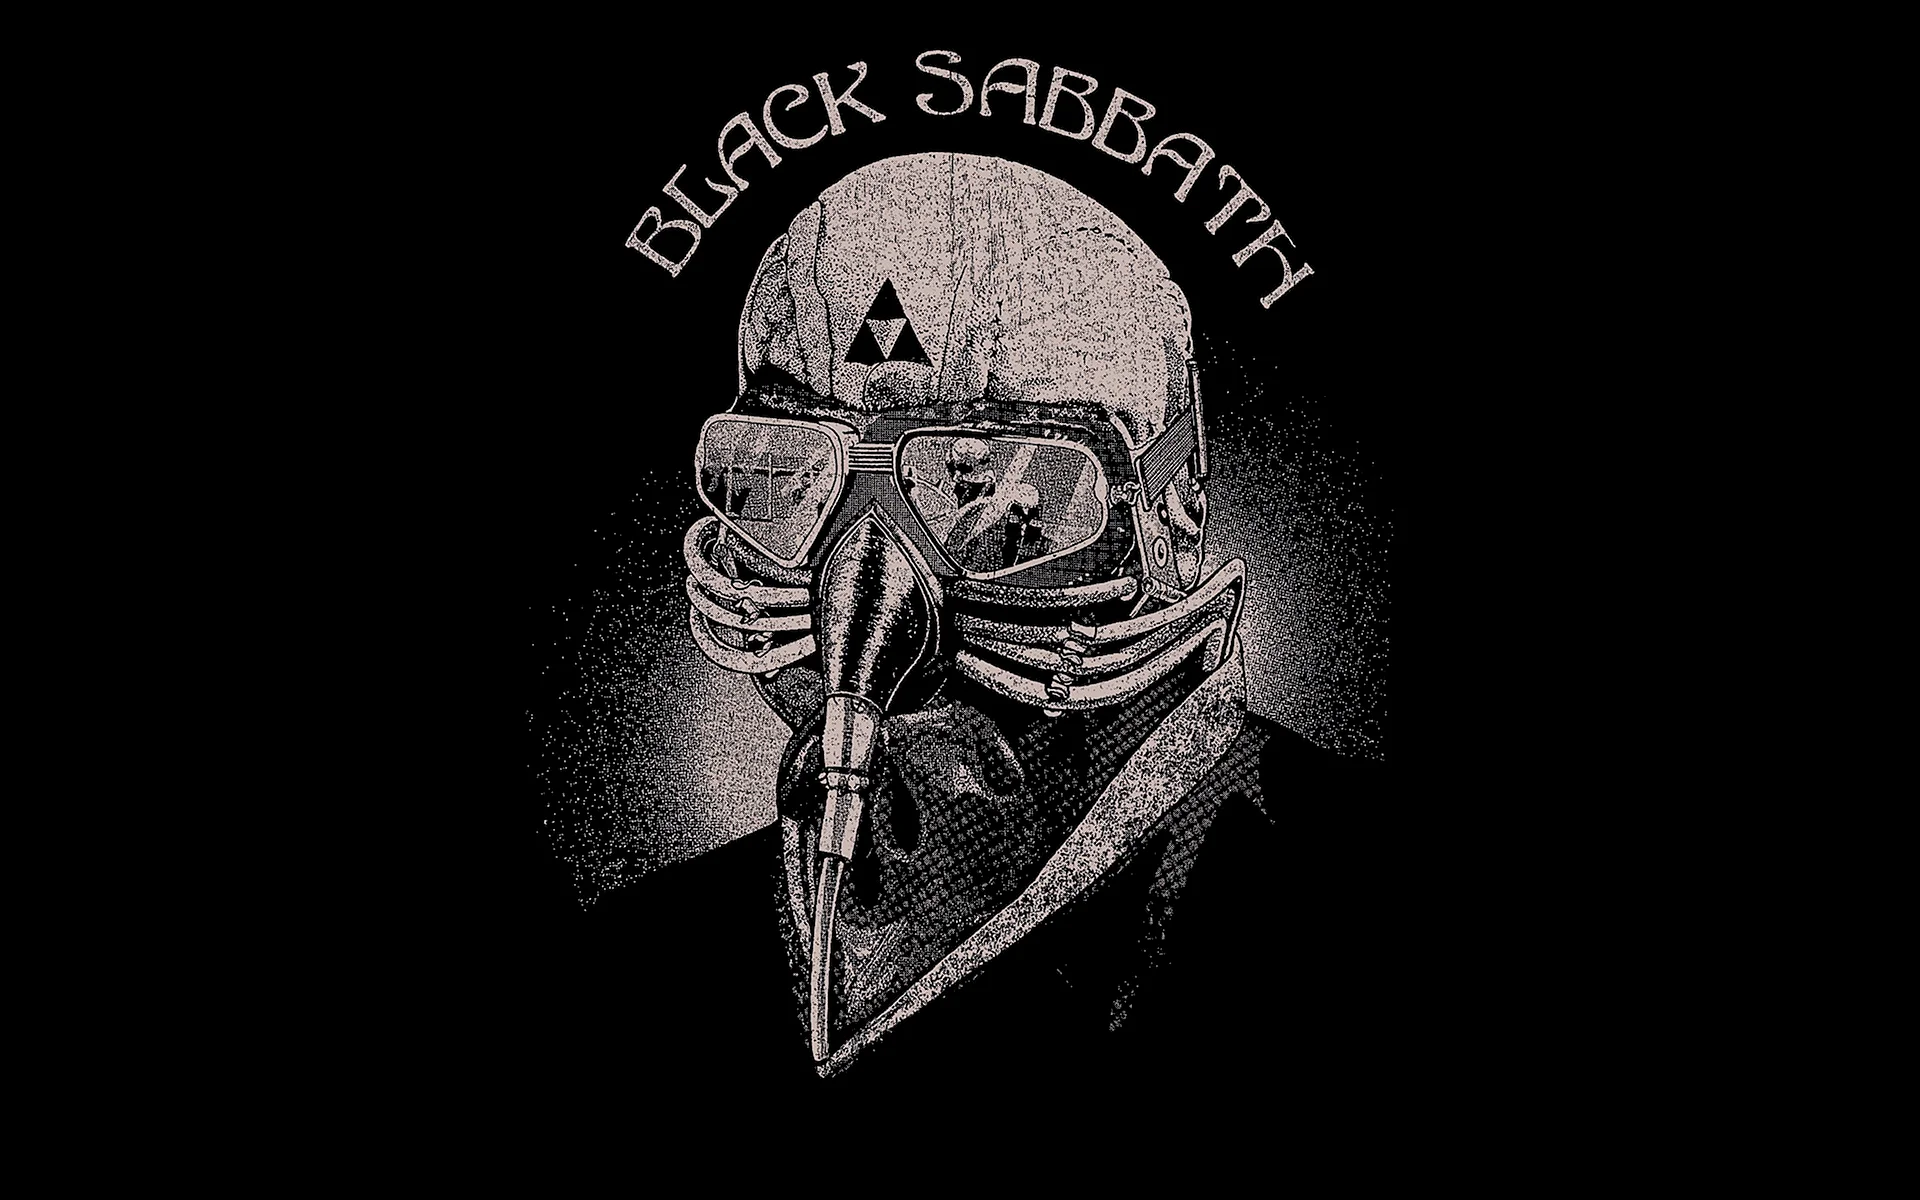 Black Sabbath Us Tour 78 Wallpaper